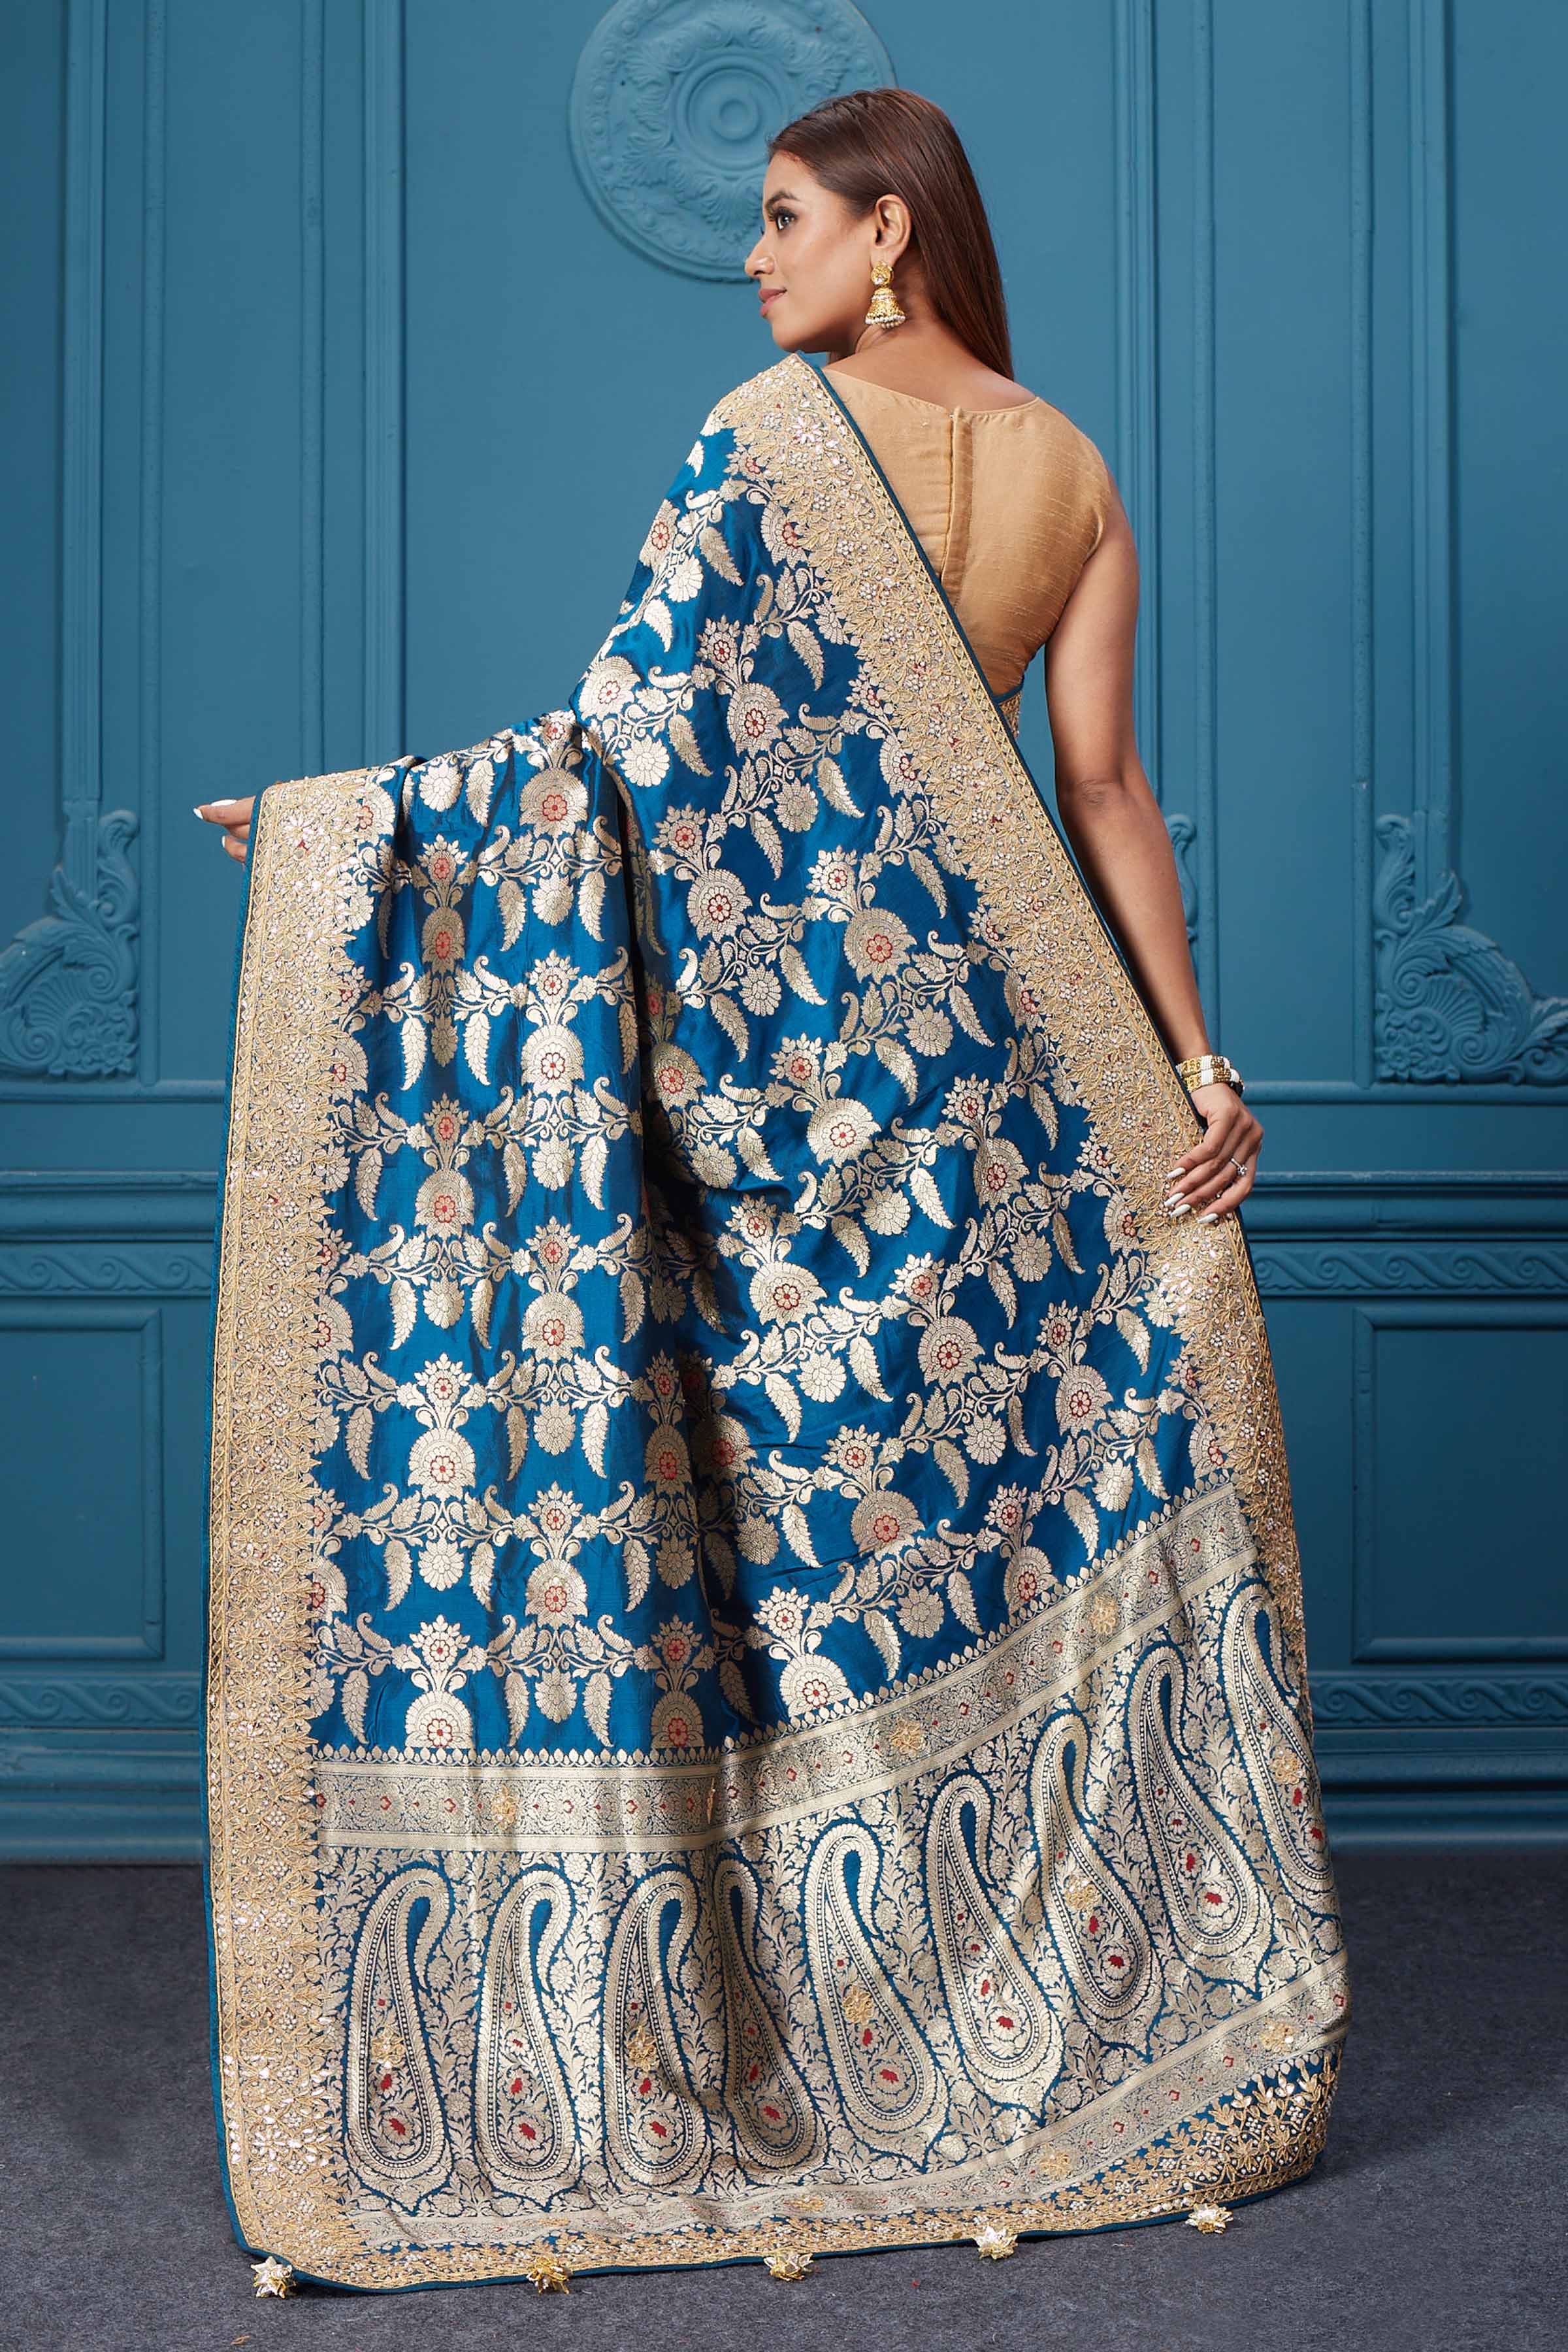 Buy sea blue Banarasi silk sari online in USA with zari minakari work. Look royal at weddings and festive occasions in exquisite designer sarees, handwoven sarees, pure silk saris, Banarasi sarees, Kanchipuram silk sarees from Pure Elegance Indian saree store in USA. -back